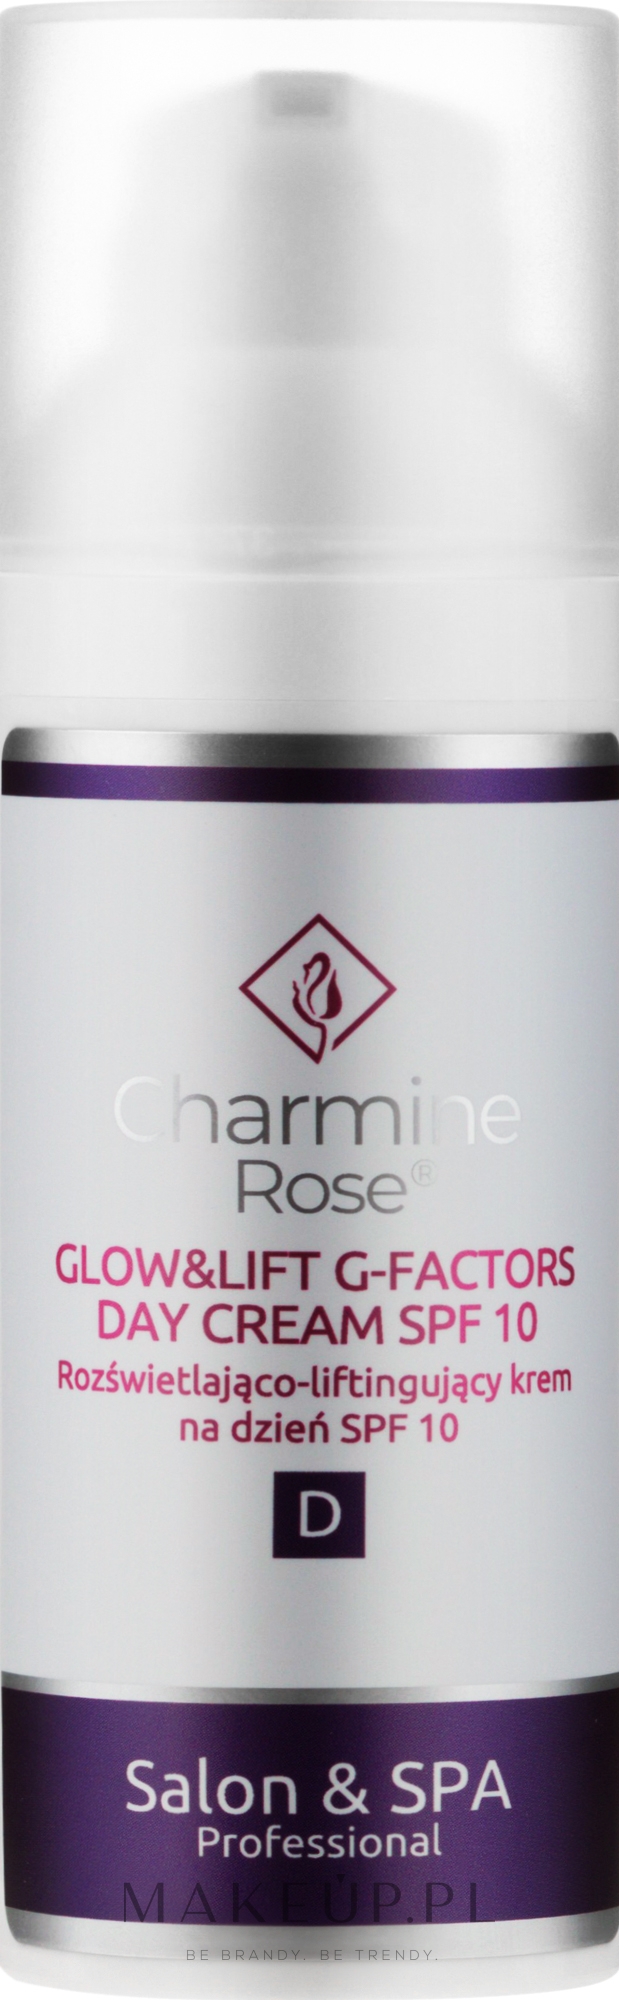 Krem do twarzy na dzień - Charmine Rose Glow&Lift G-Factors Day Cream SPF10 — Zdjęcie 50 ml